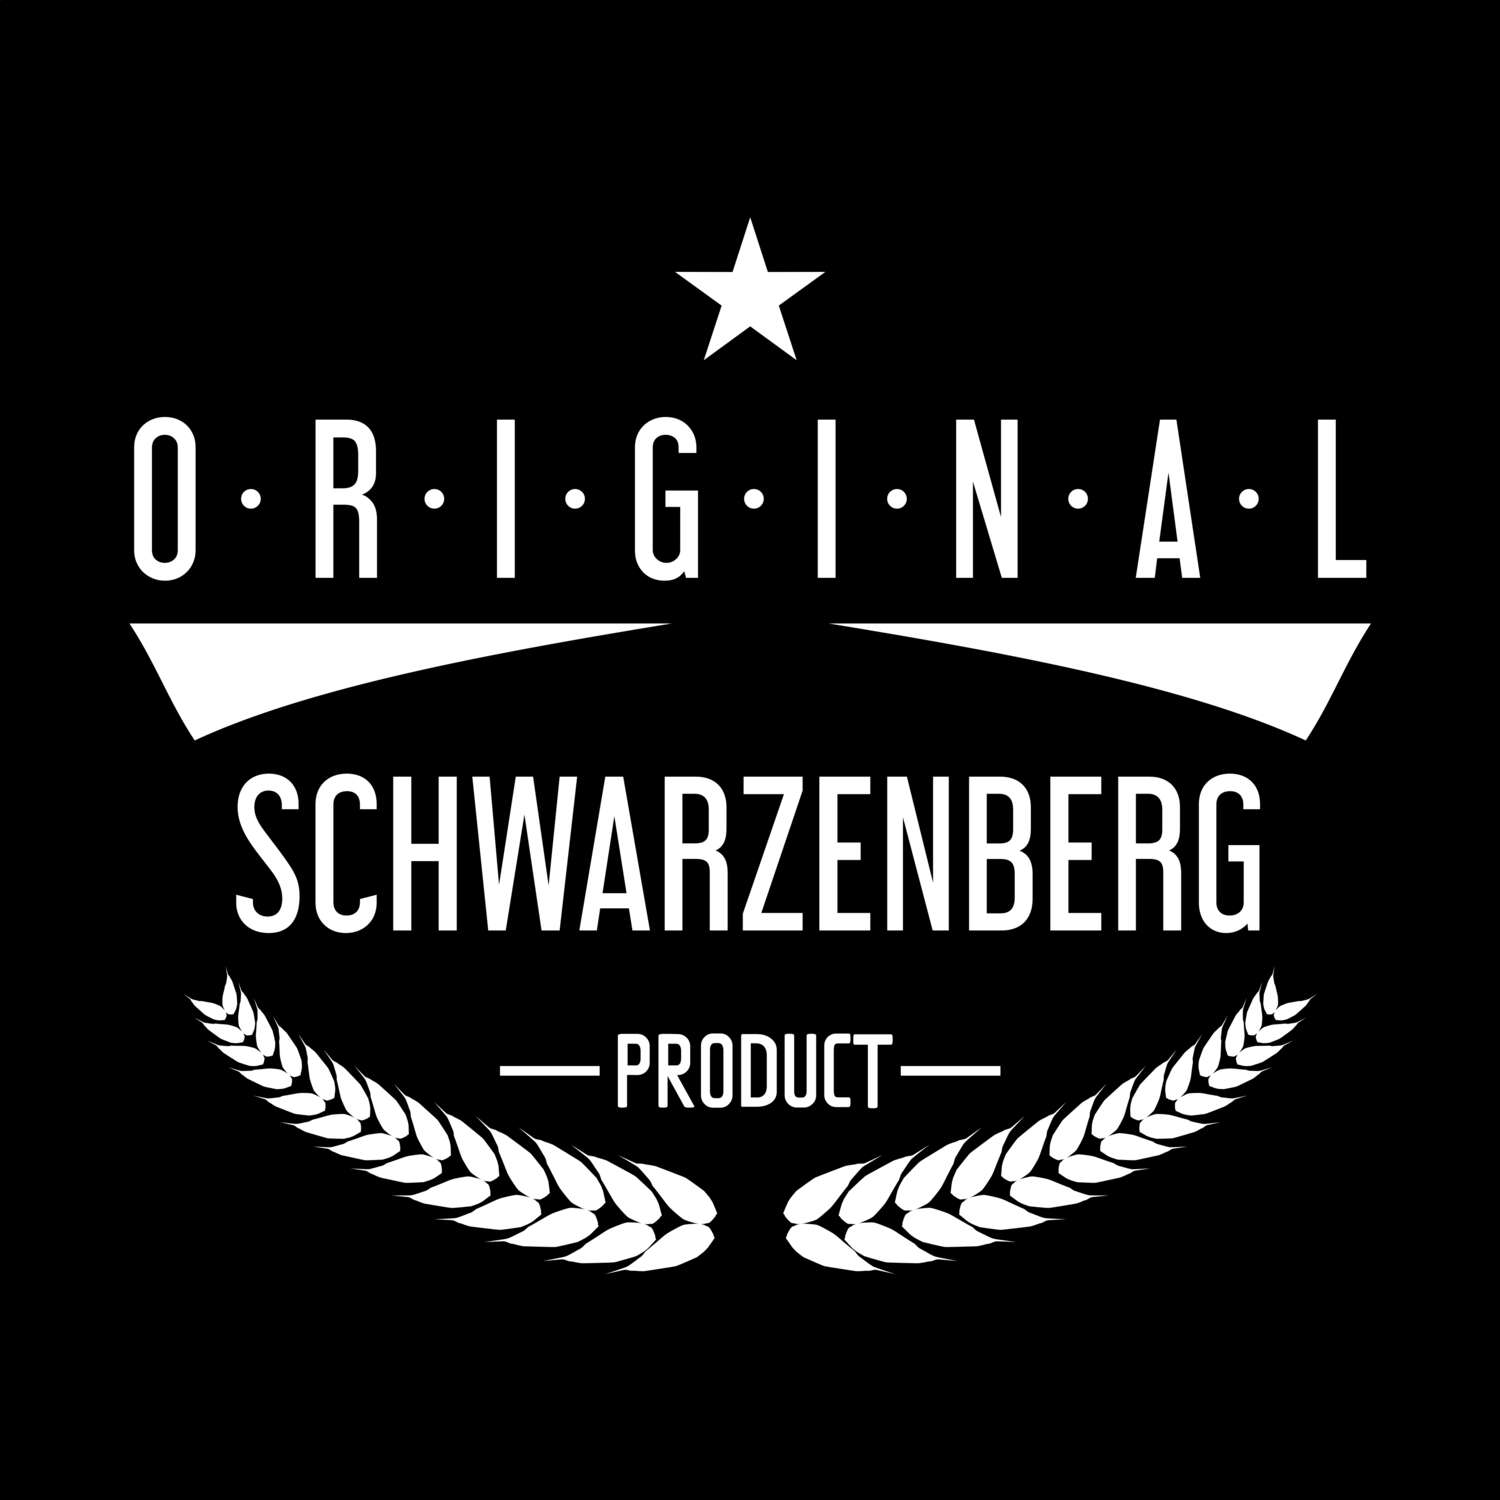 Schwarzenberg T-Shirt »Original Product«